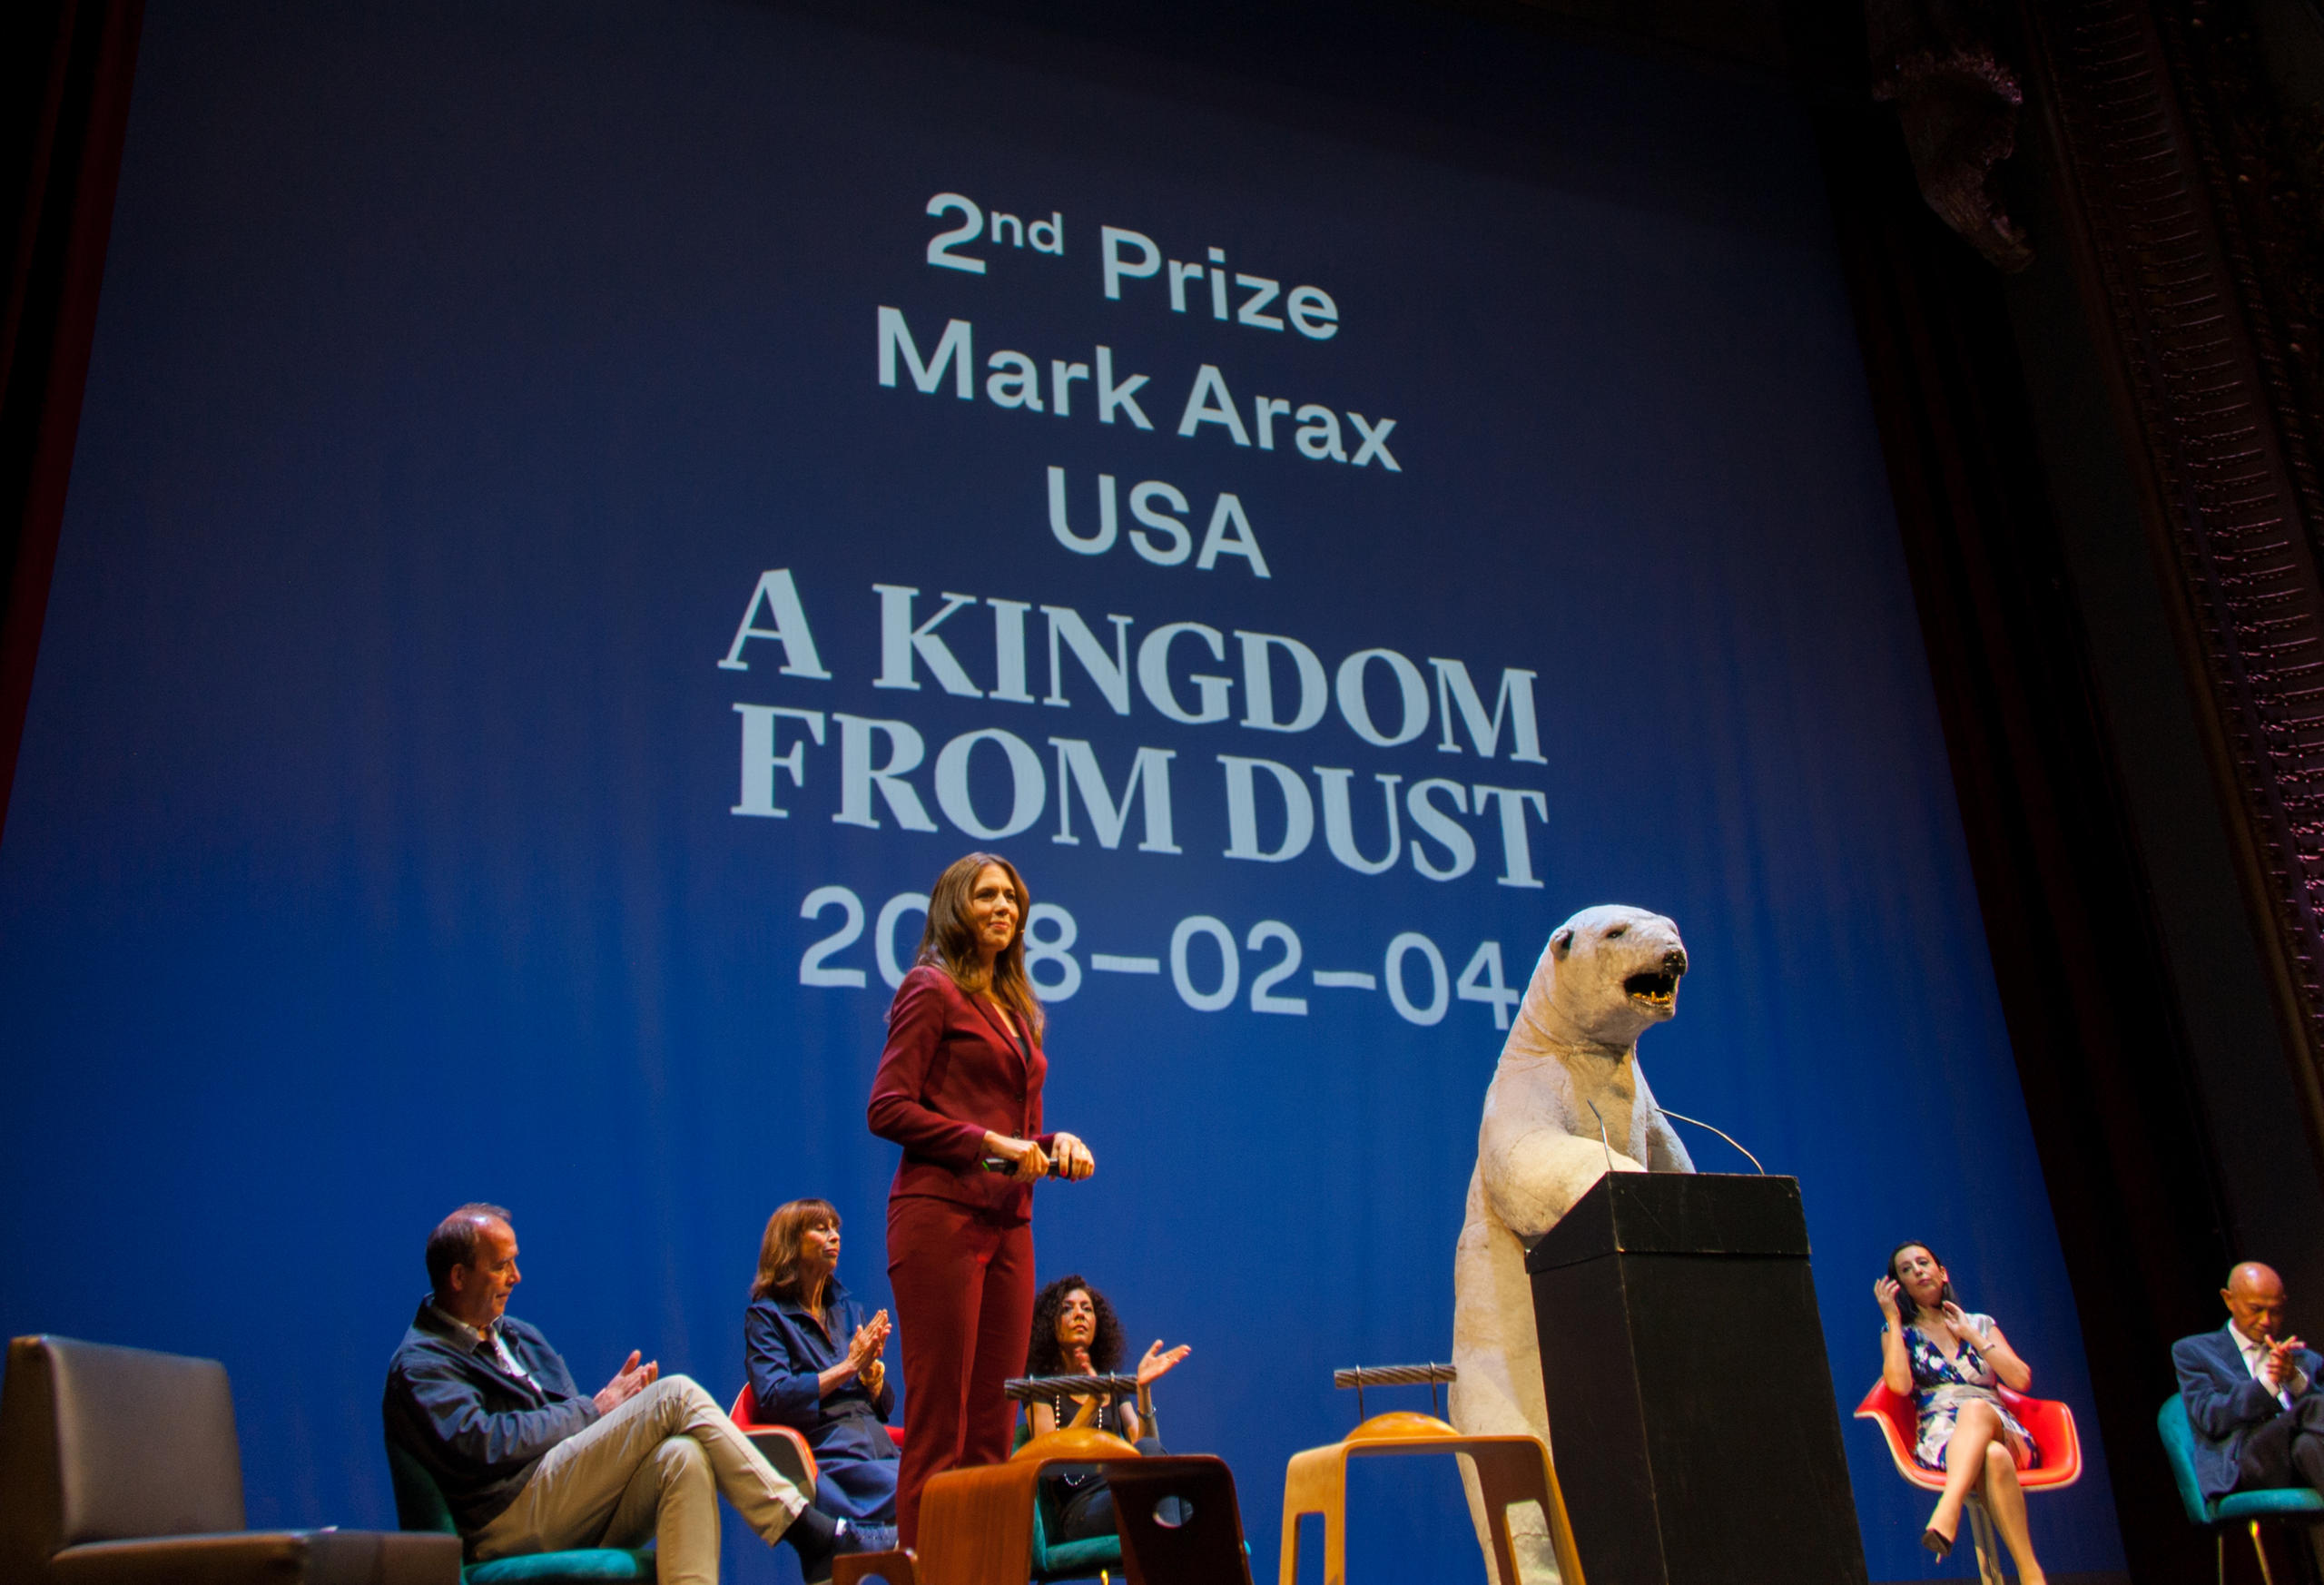 美國記者Mark Arax的《A kingdom from Dust》獲得二等獎(20 000瑞士法郎)。他因故無法來現場領獎，但通過一個短片向組織方表示感謝，並發表獲獎感言。